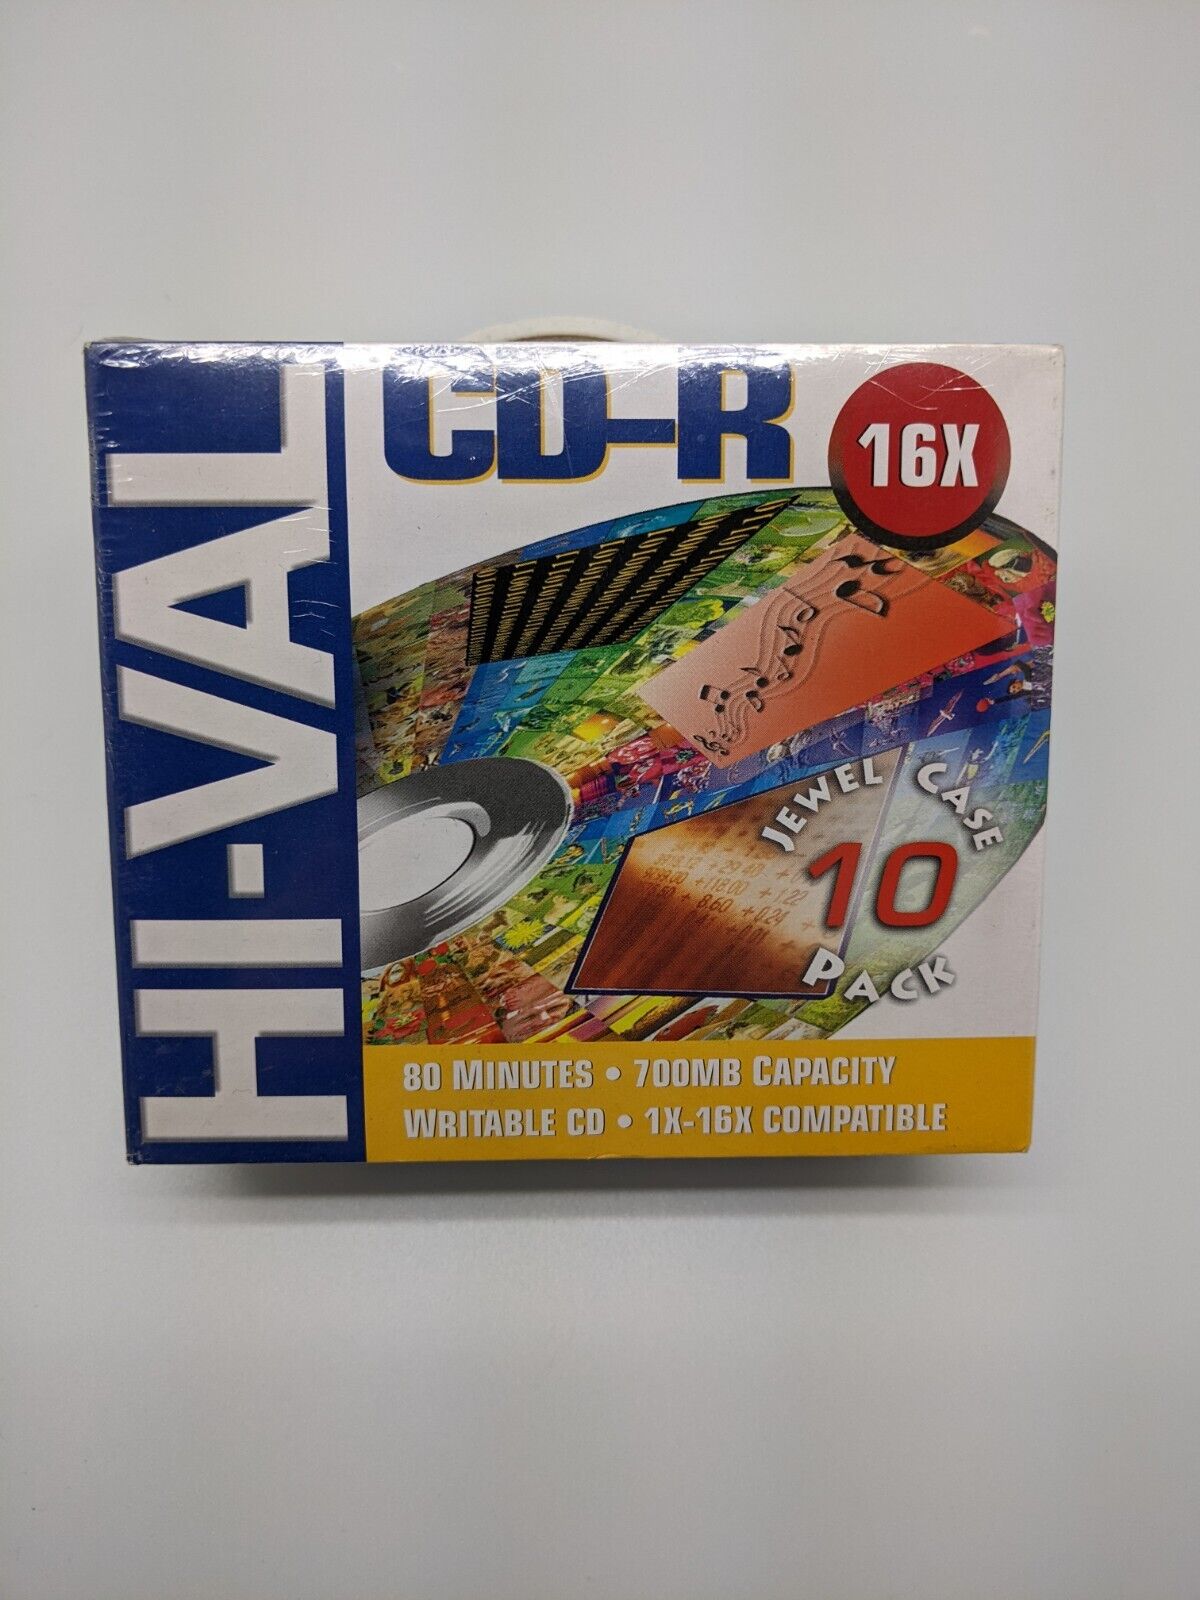 Hi-Val CD-R Media 80min /700MB 1X-16X Compatible Writable 10 Pk Jewel Cases New